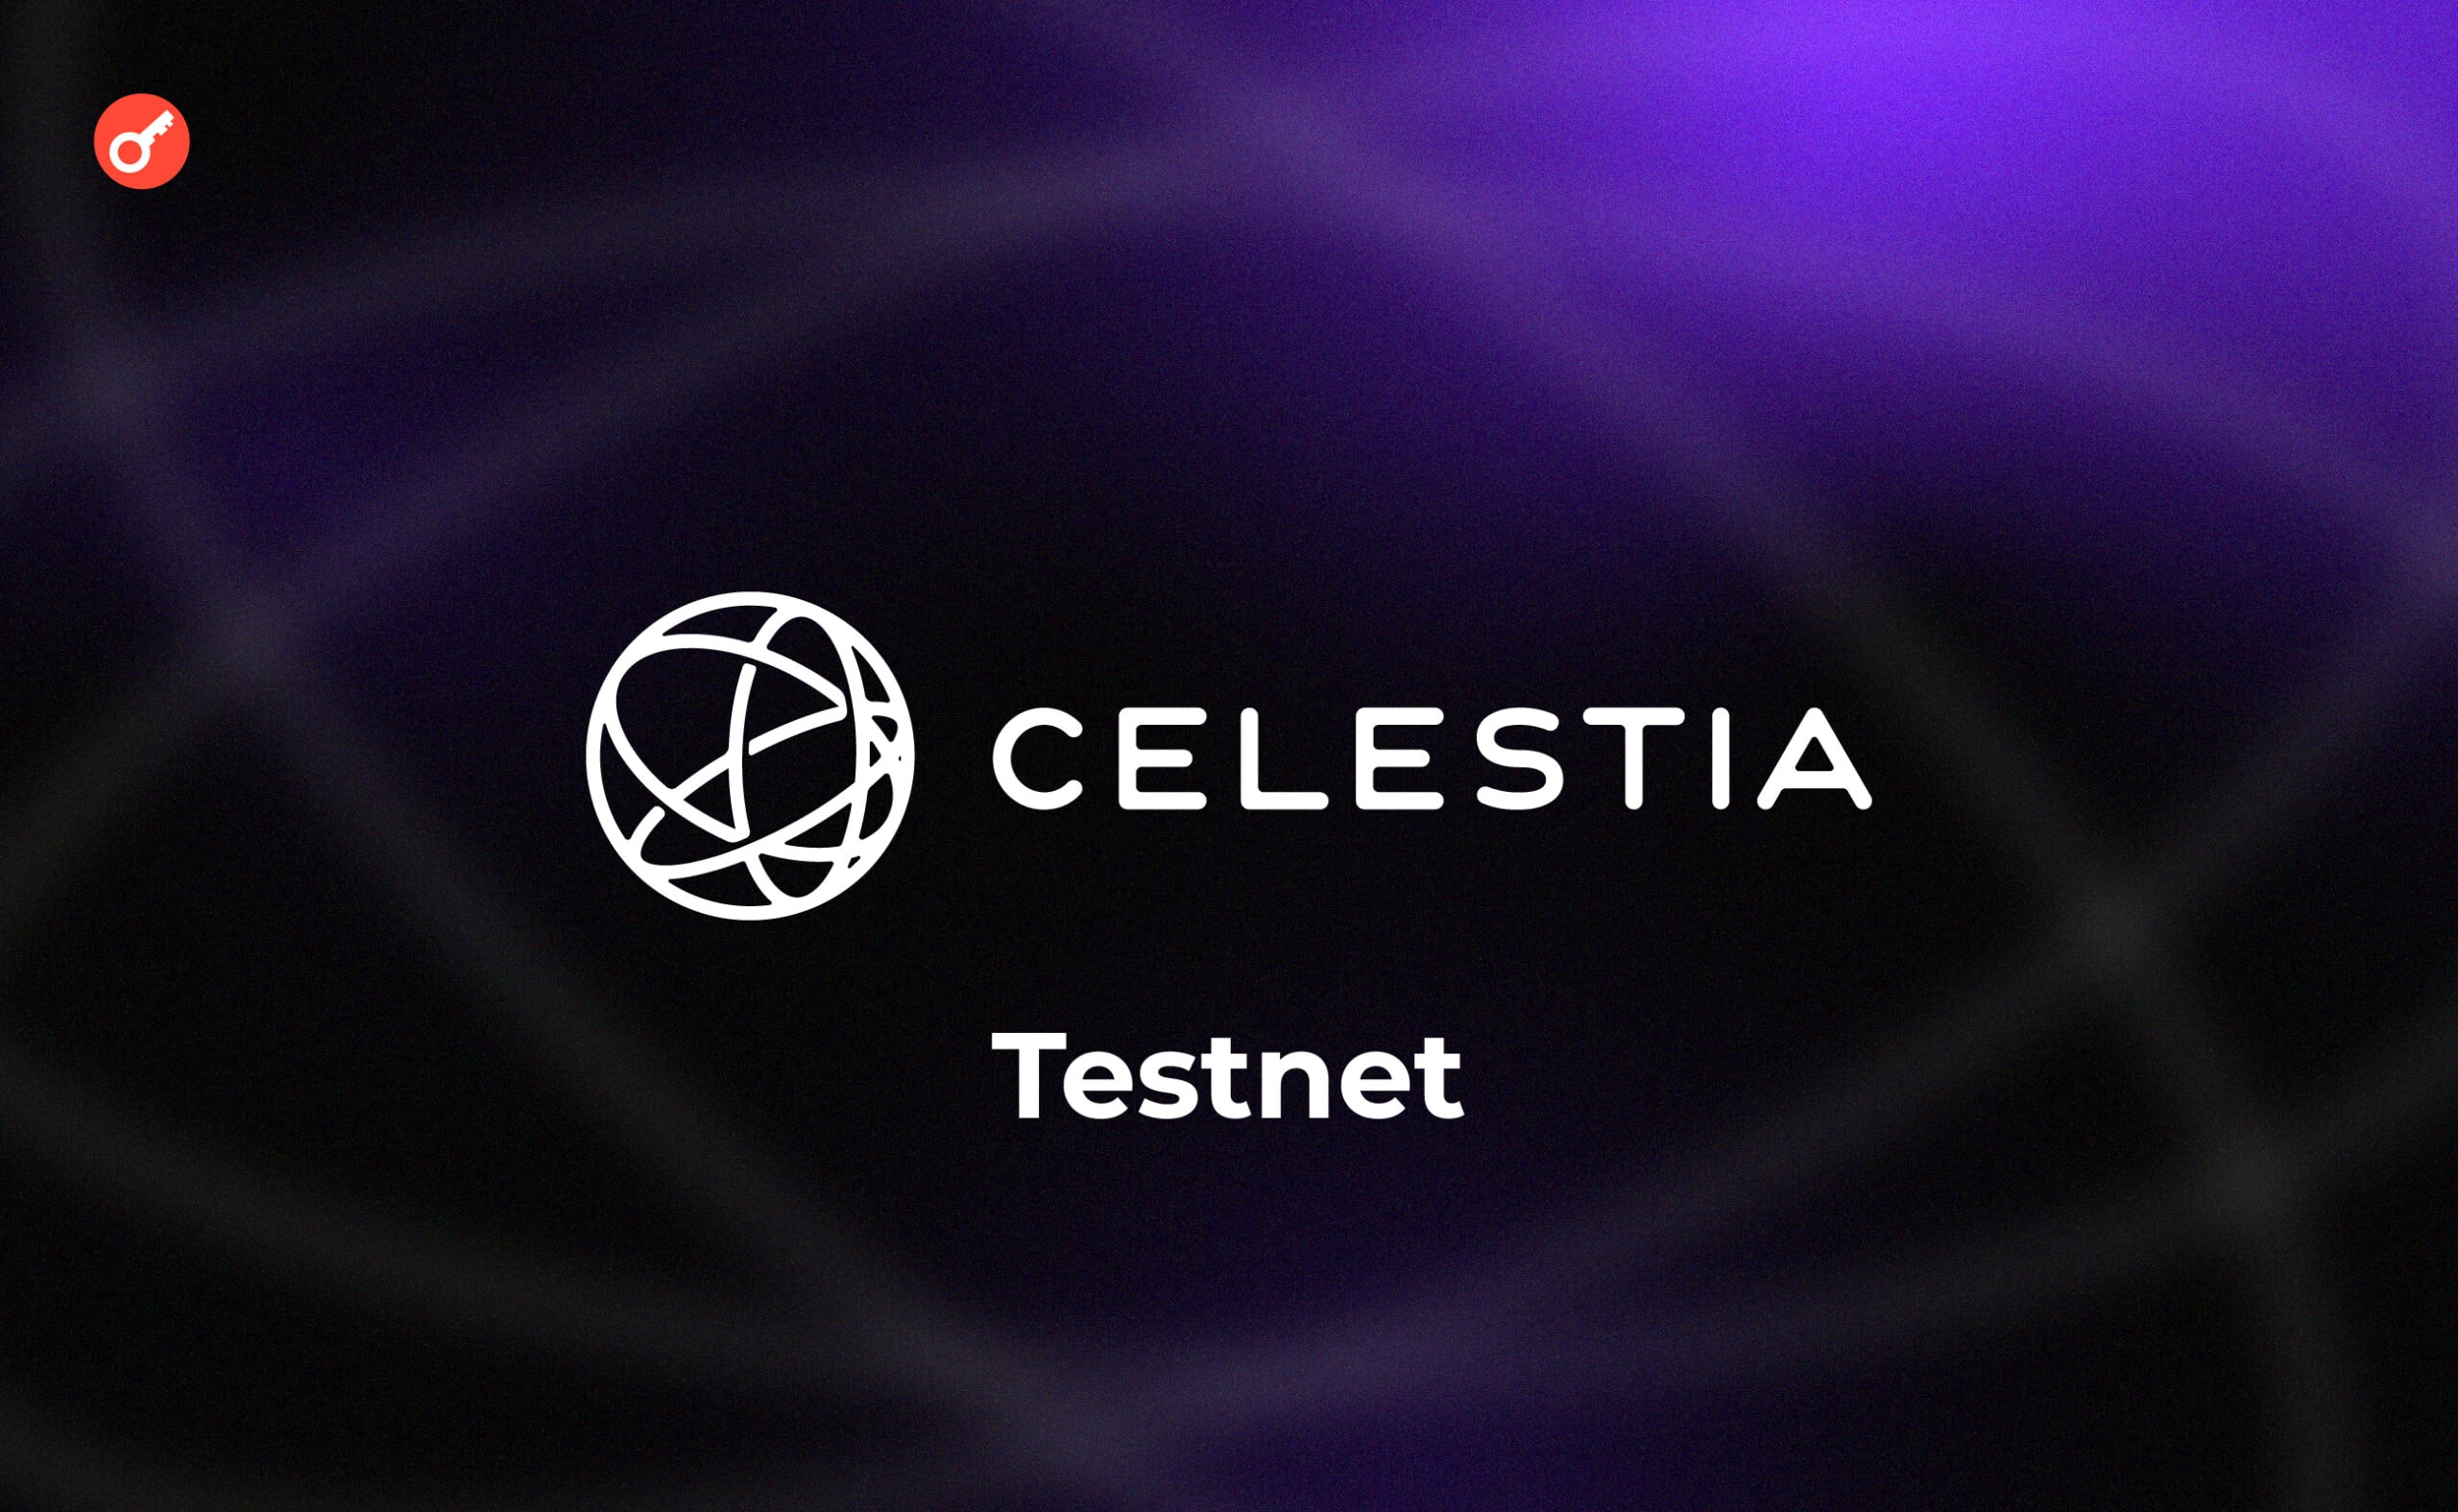 Celestia тестнет: огляд на доступні активності в мережі. Головний колаж статті.